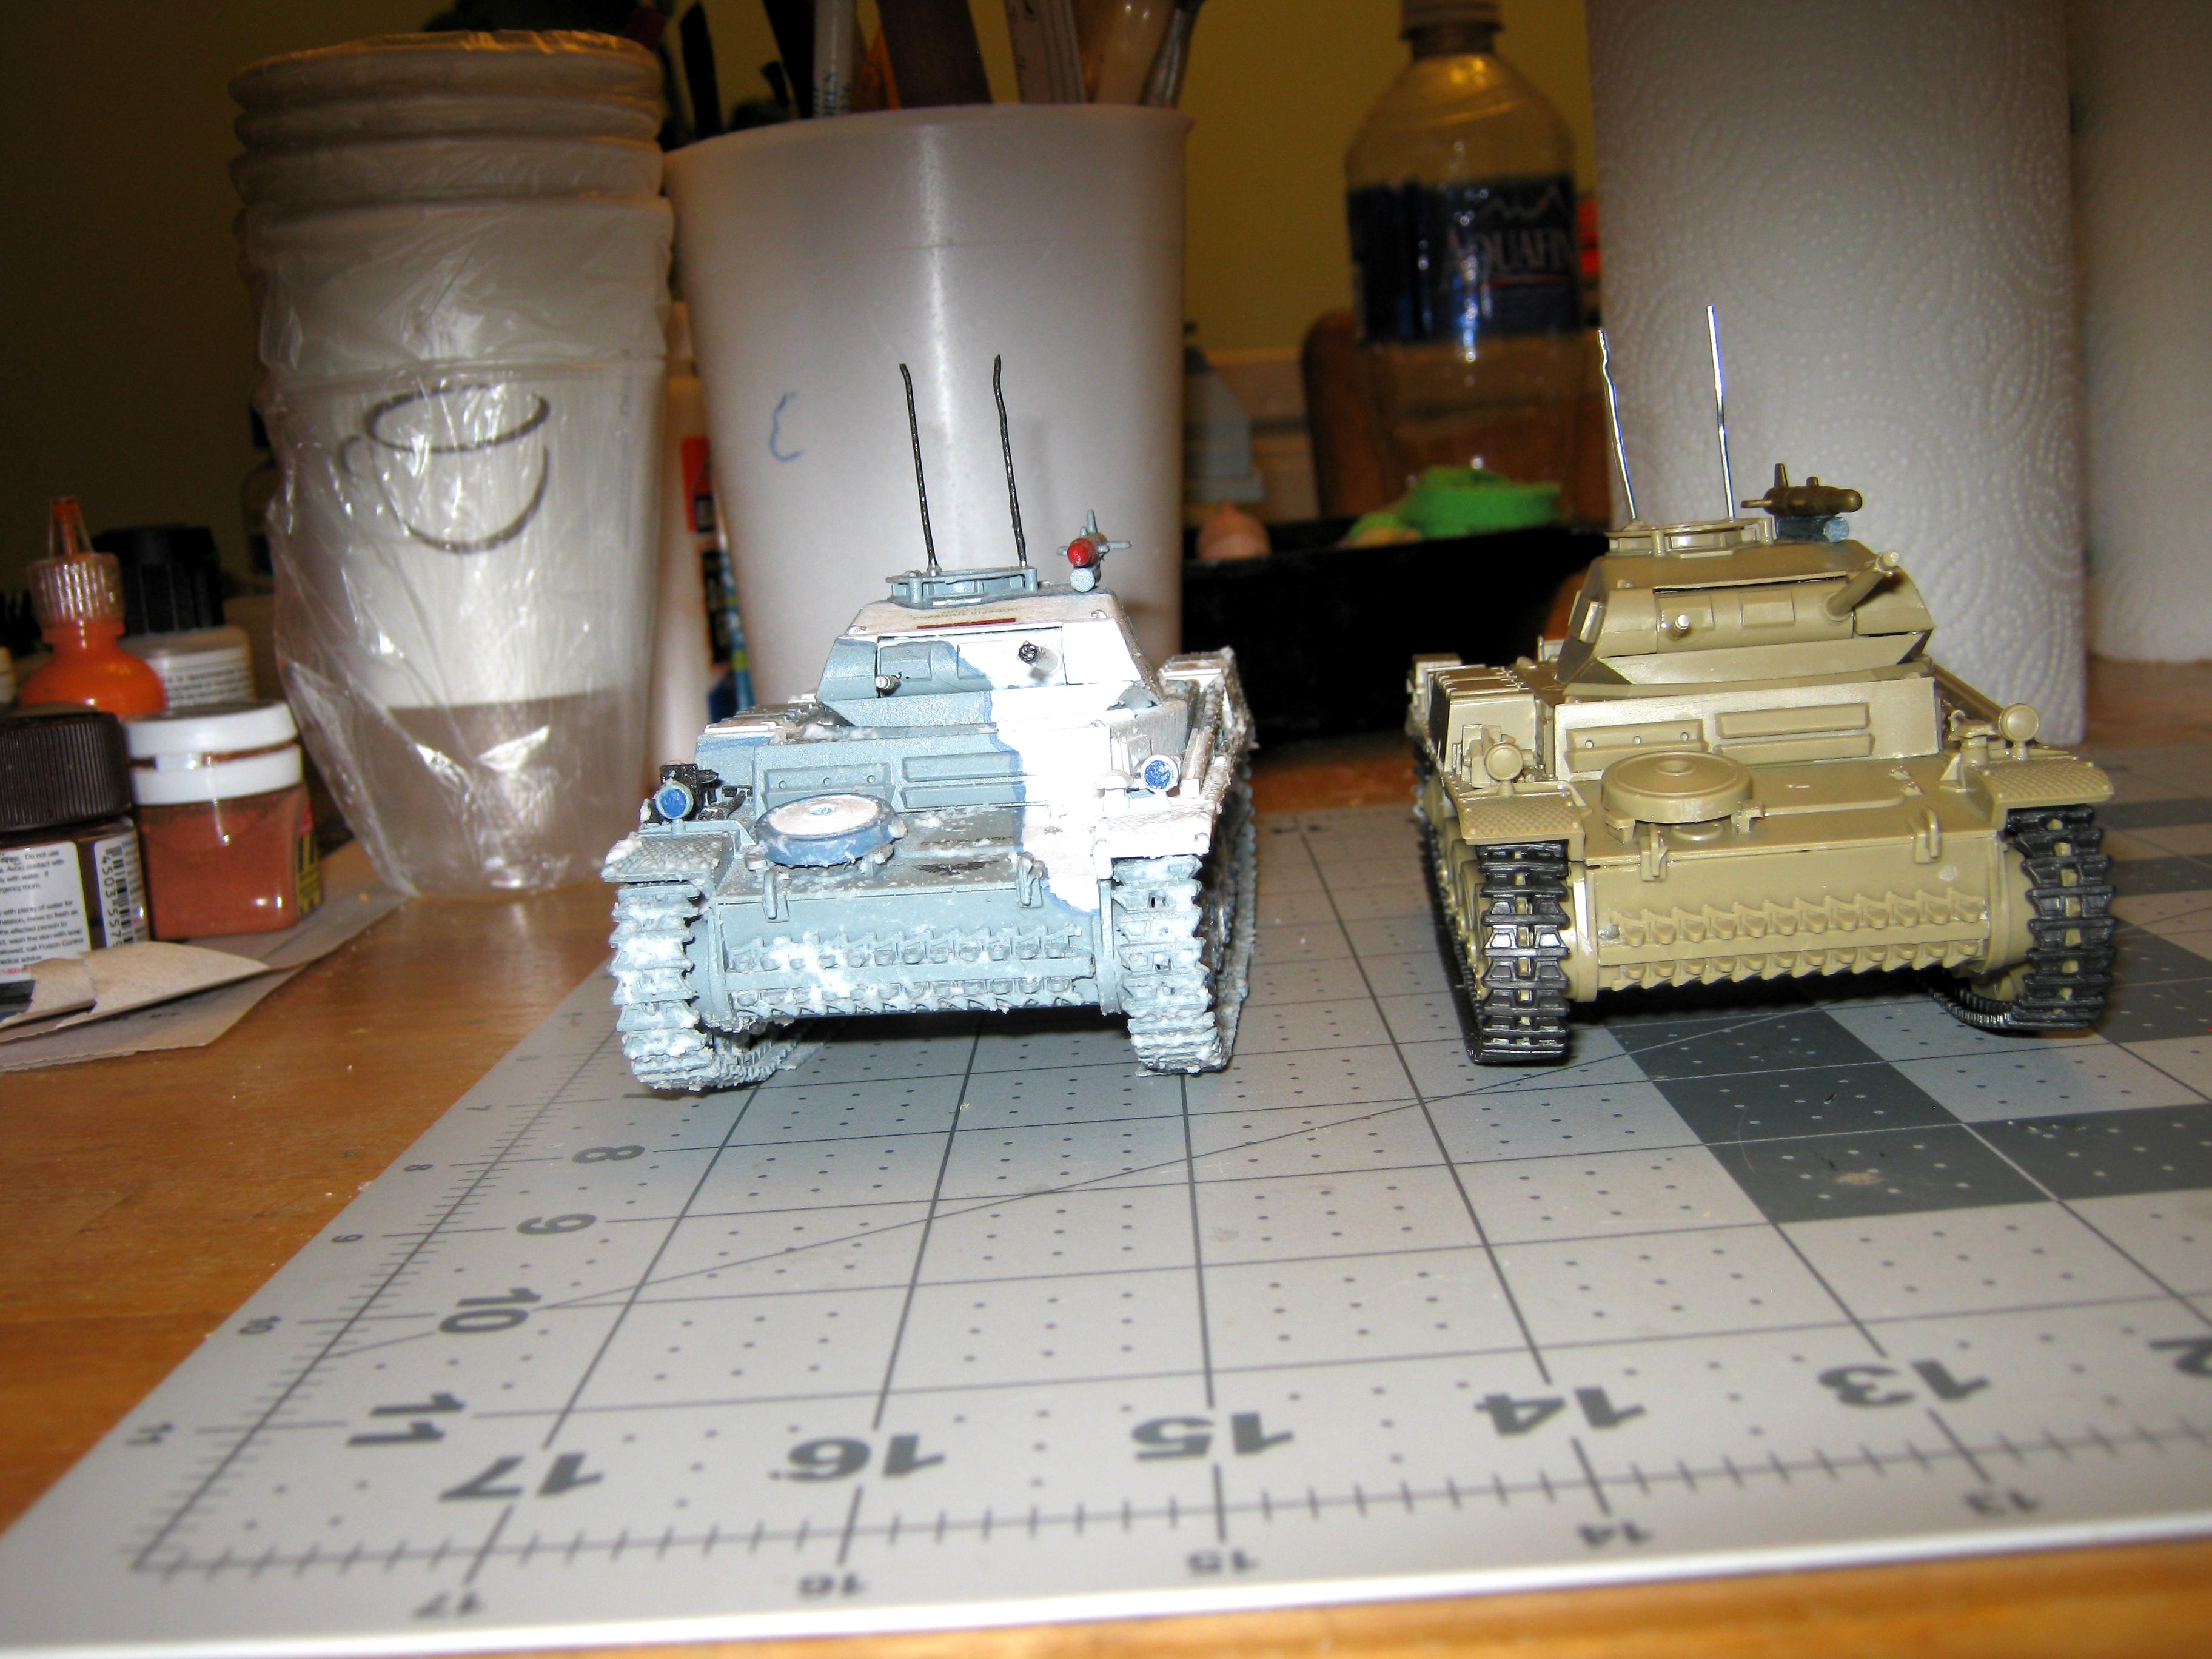 Conversion, Counts As, Germans, Imperial, Light Tank, Panzer Ii, Panzerkampfwagen, Tank, World War 2